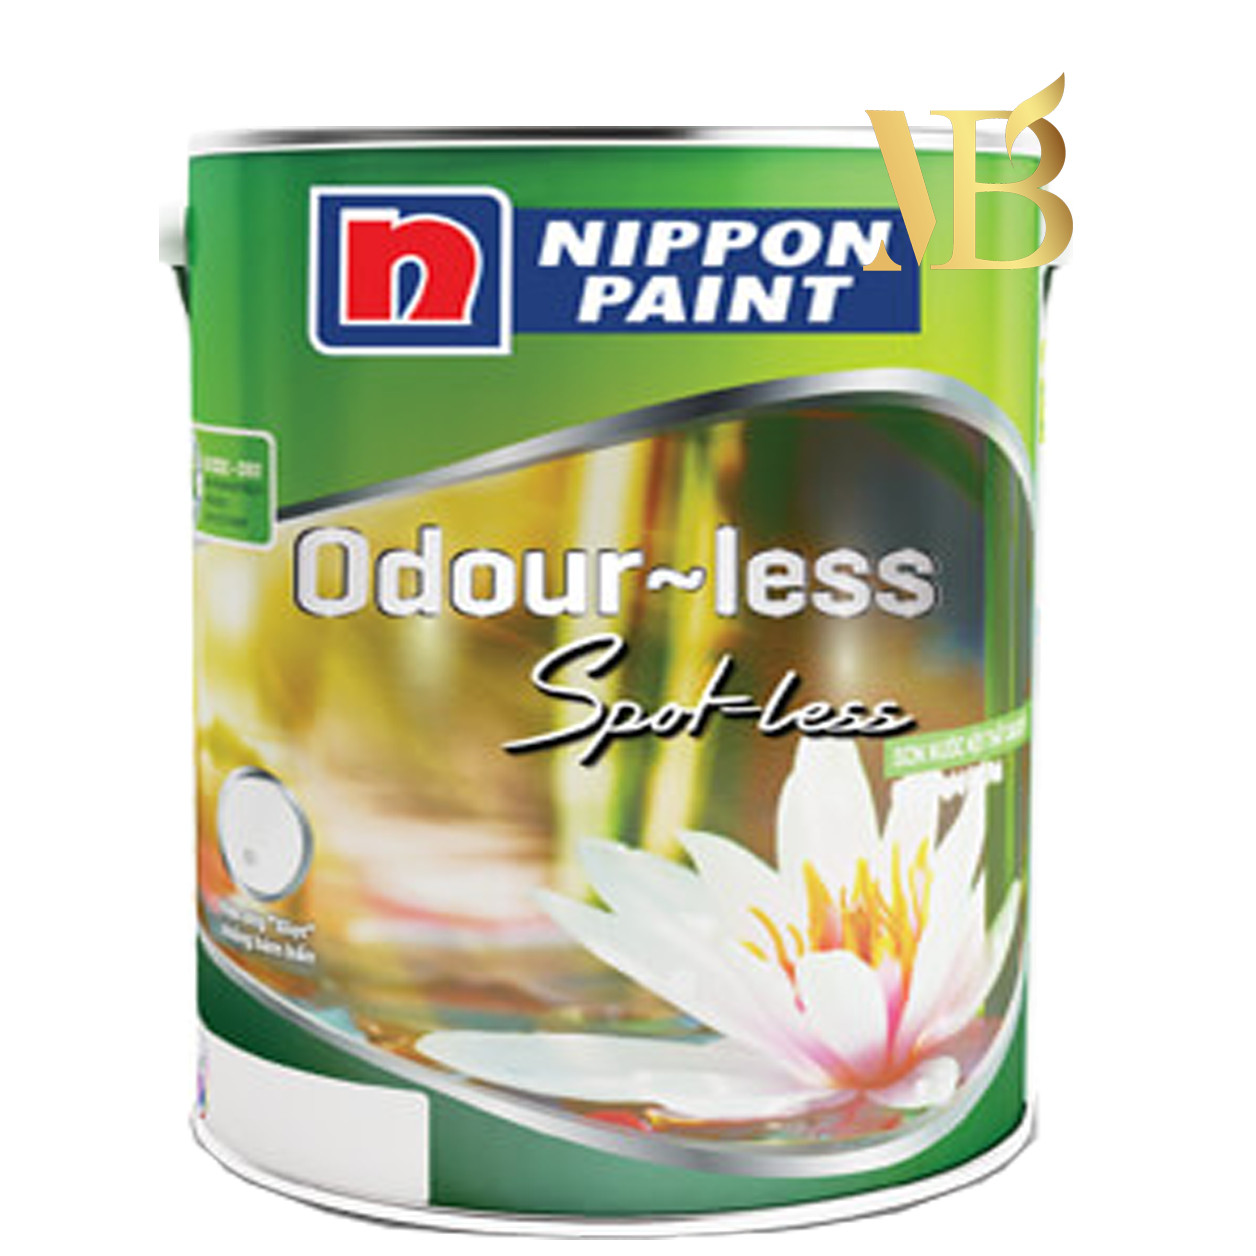 Sơn Nippon Odour-less Spot-less